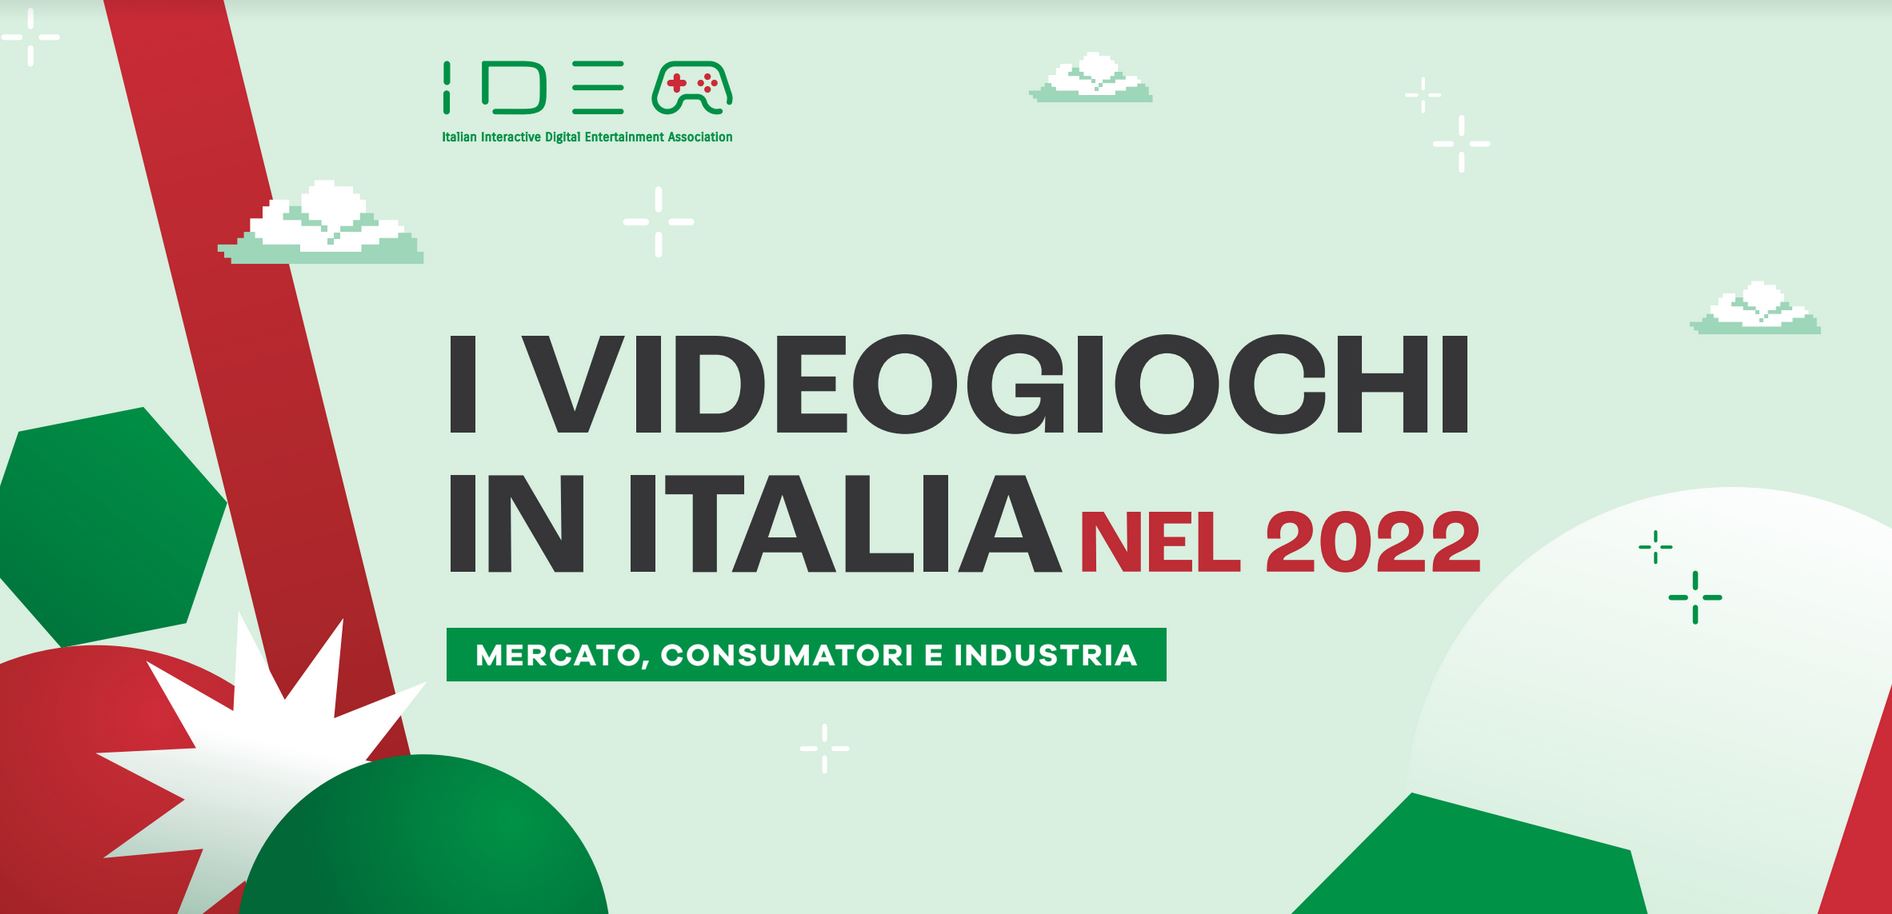 Videogiochi: segnali di crescita per il Made in Italy